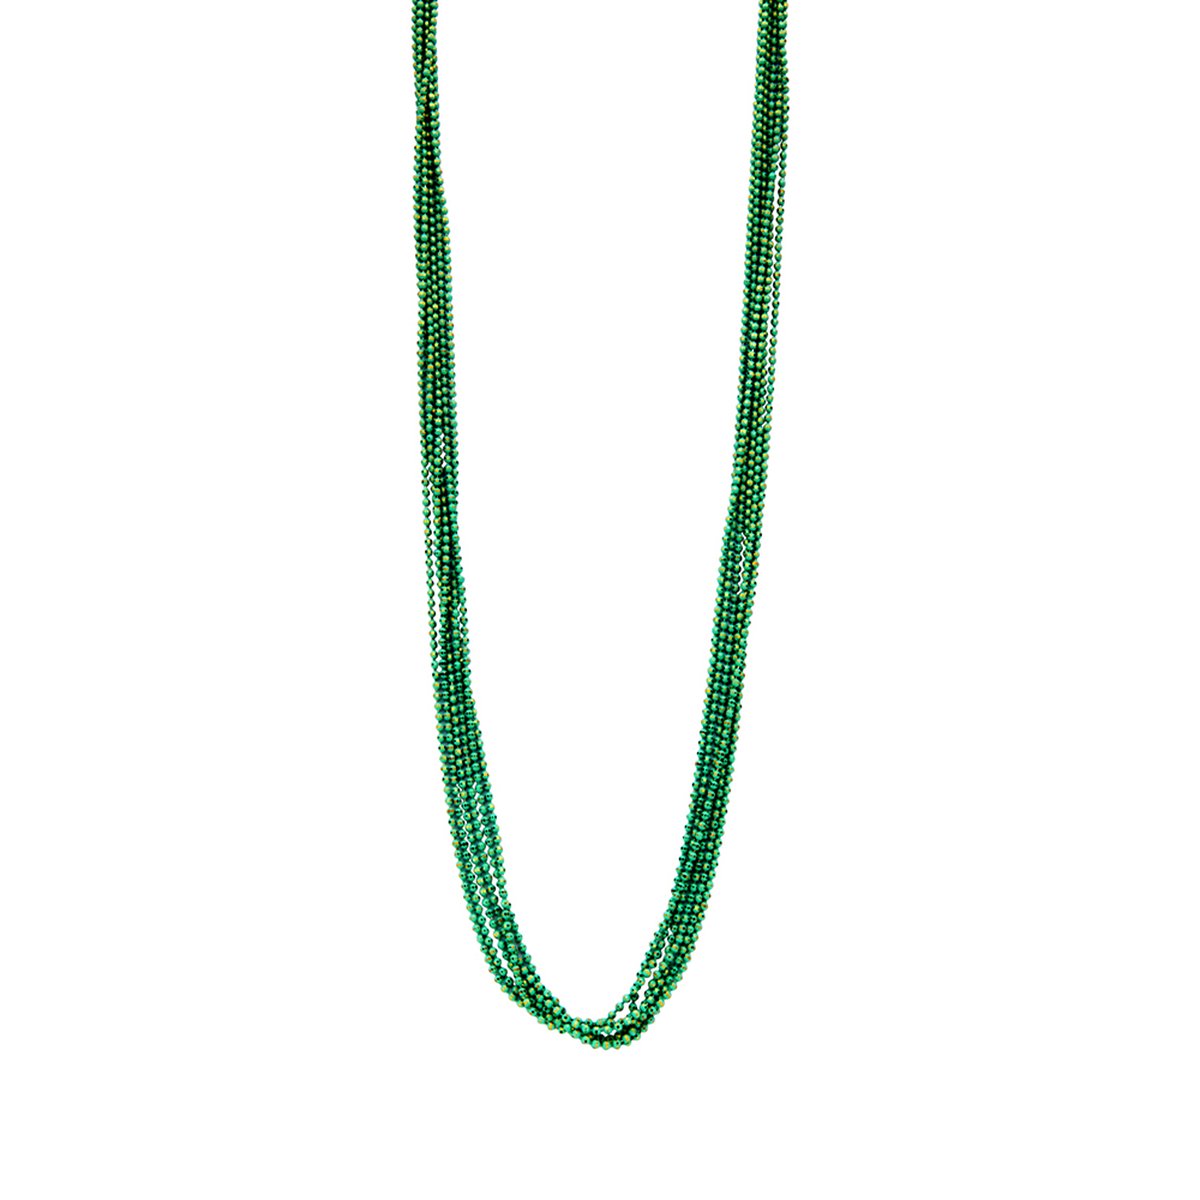 Les Cordes - Halsketting - Collier - DETTELANG - Kleur Groen - Metaal - Sieraad Dames - Juwelen - Statement ketting